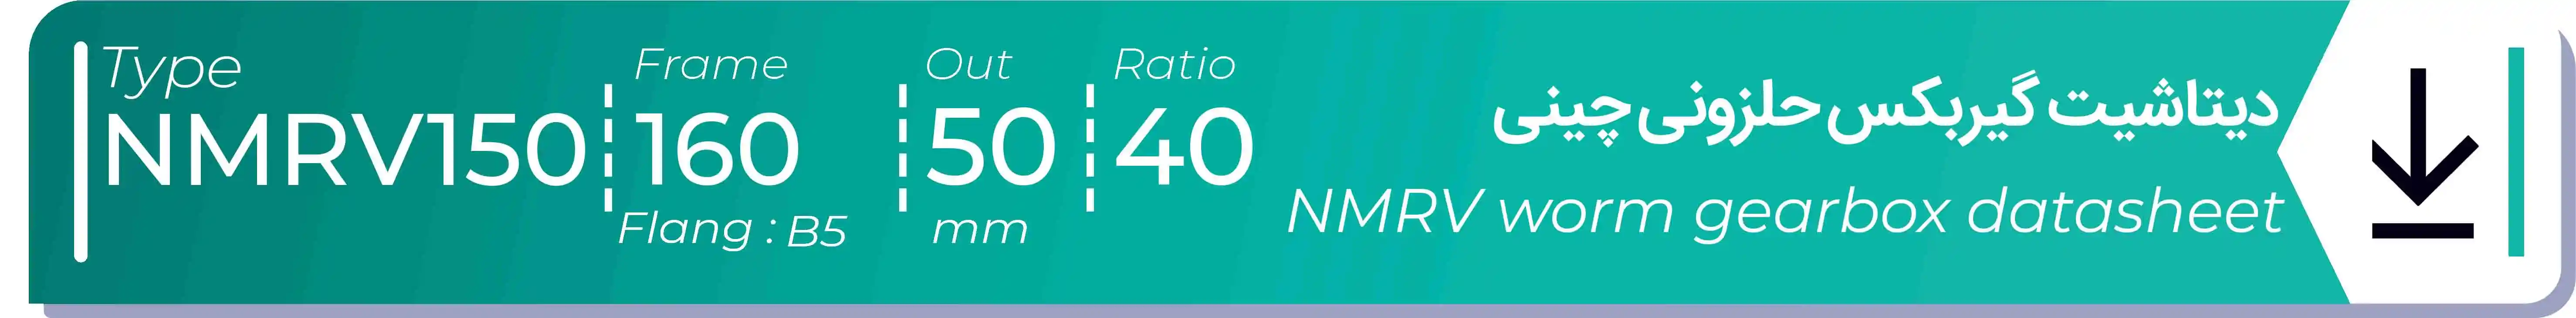  دیتاشیت و مشخصات فنی گیربکس حلزونی چینی   NMRV150  -  با خروجی 50- میلی متر و نسبت40 و فریم 160